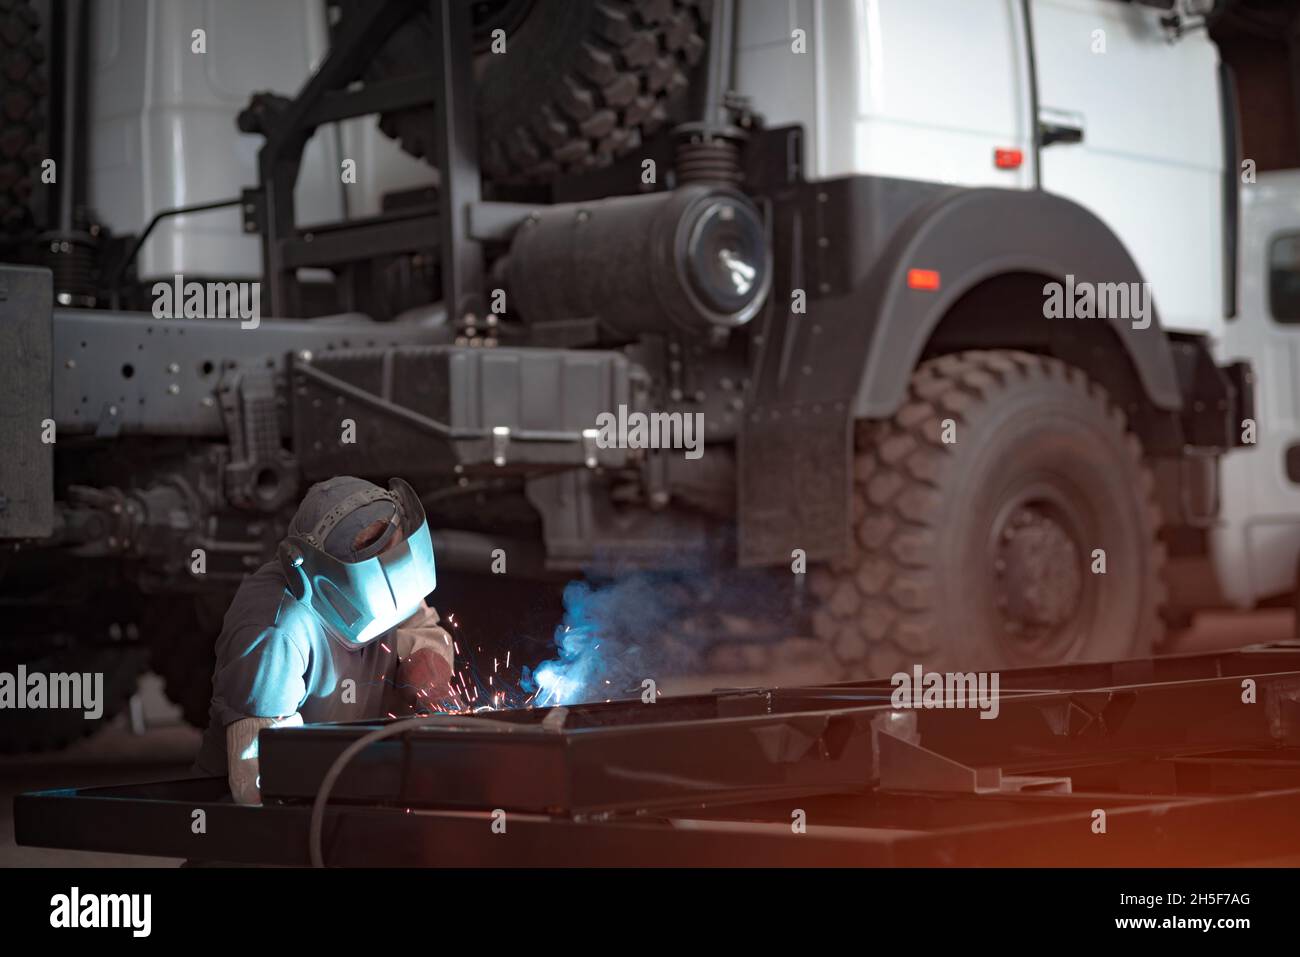 Schweißer in einer Autowerkstatt schweißt einen LKW-Rahmen Stockfotografie  - Alamy